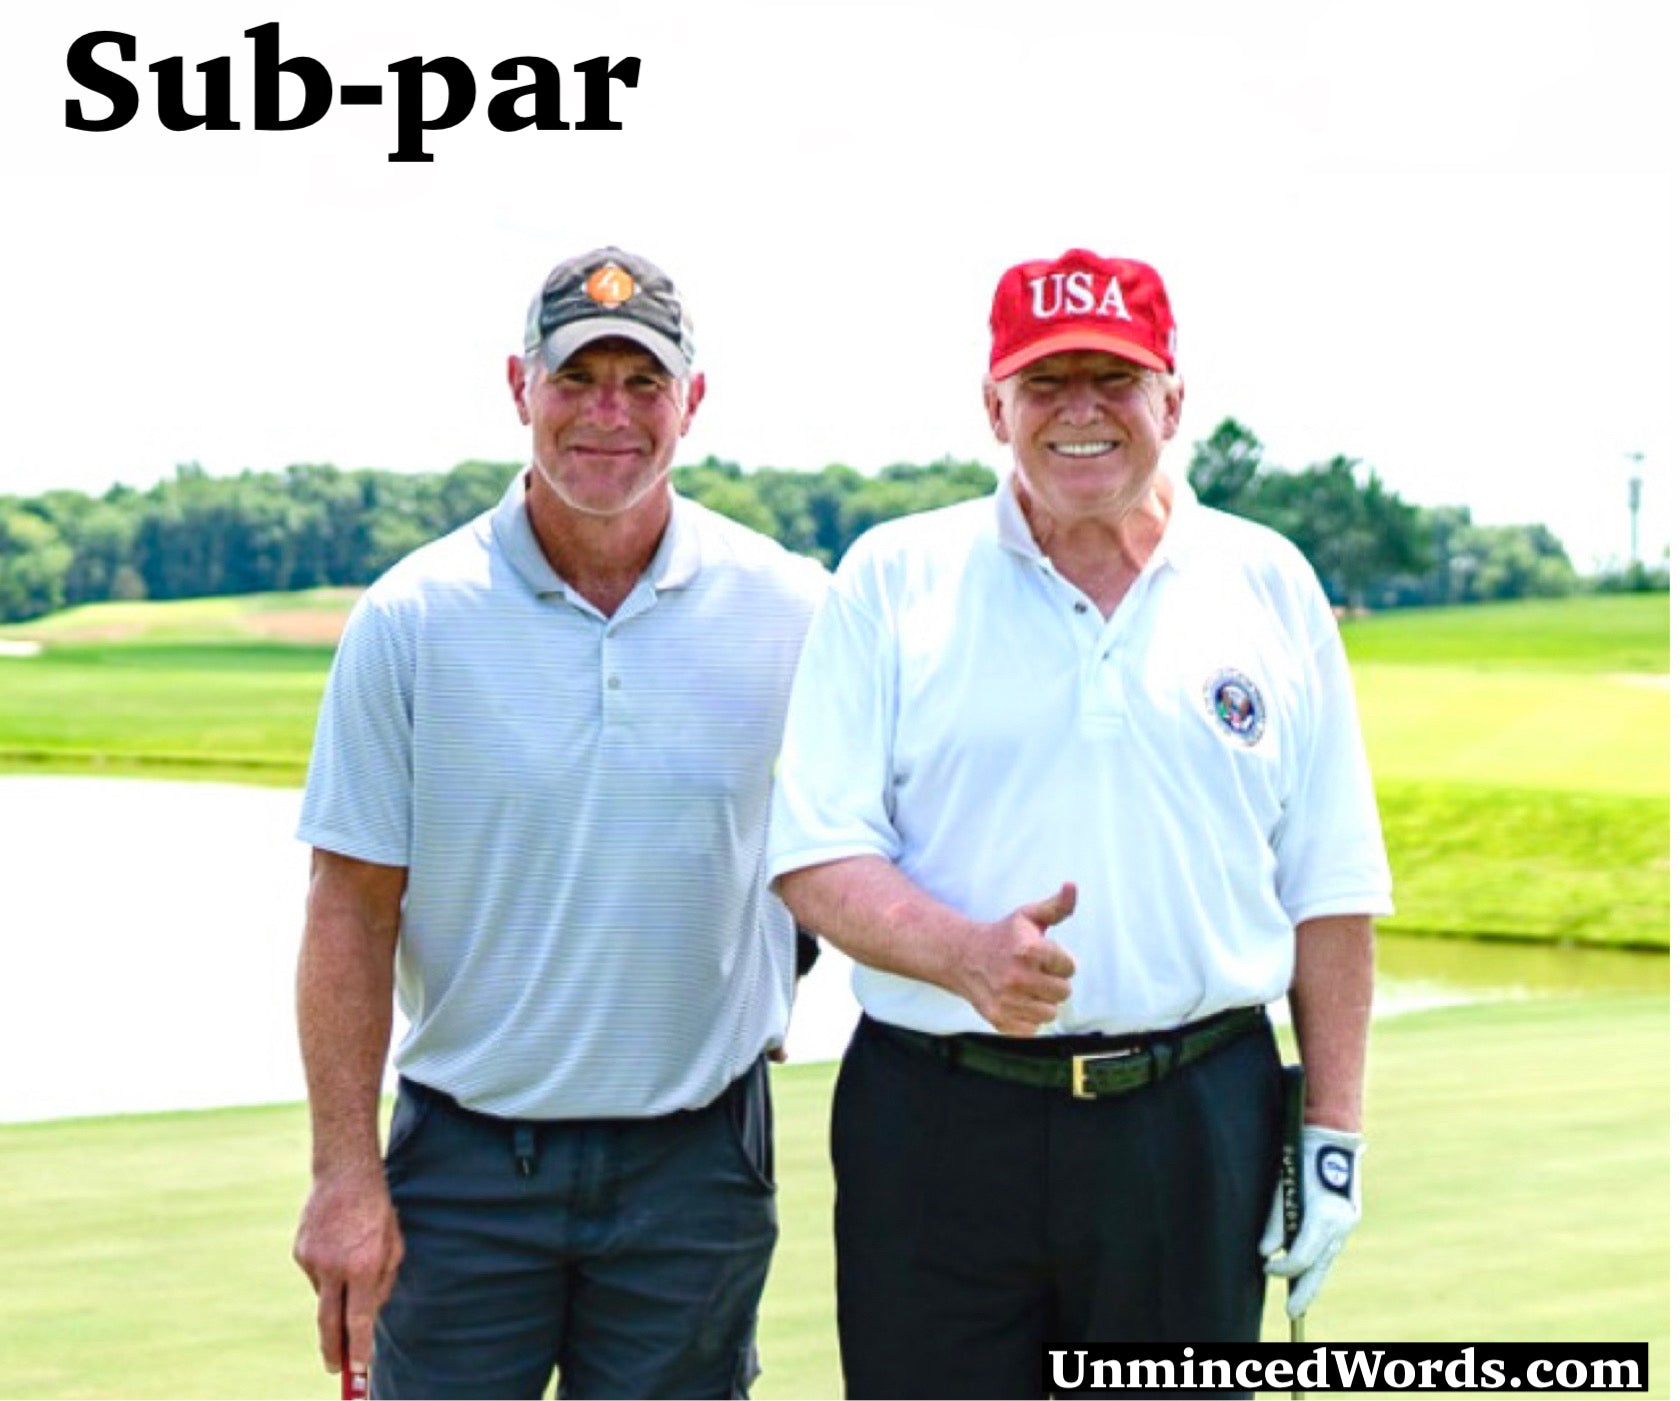 Sub-par sums Brett Favre and Donald Trump